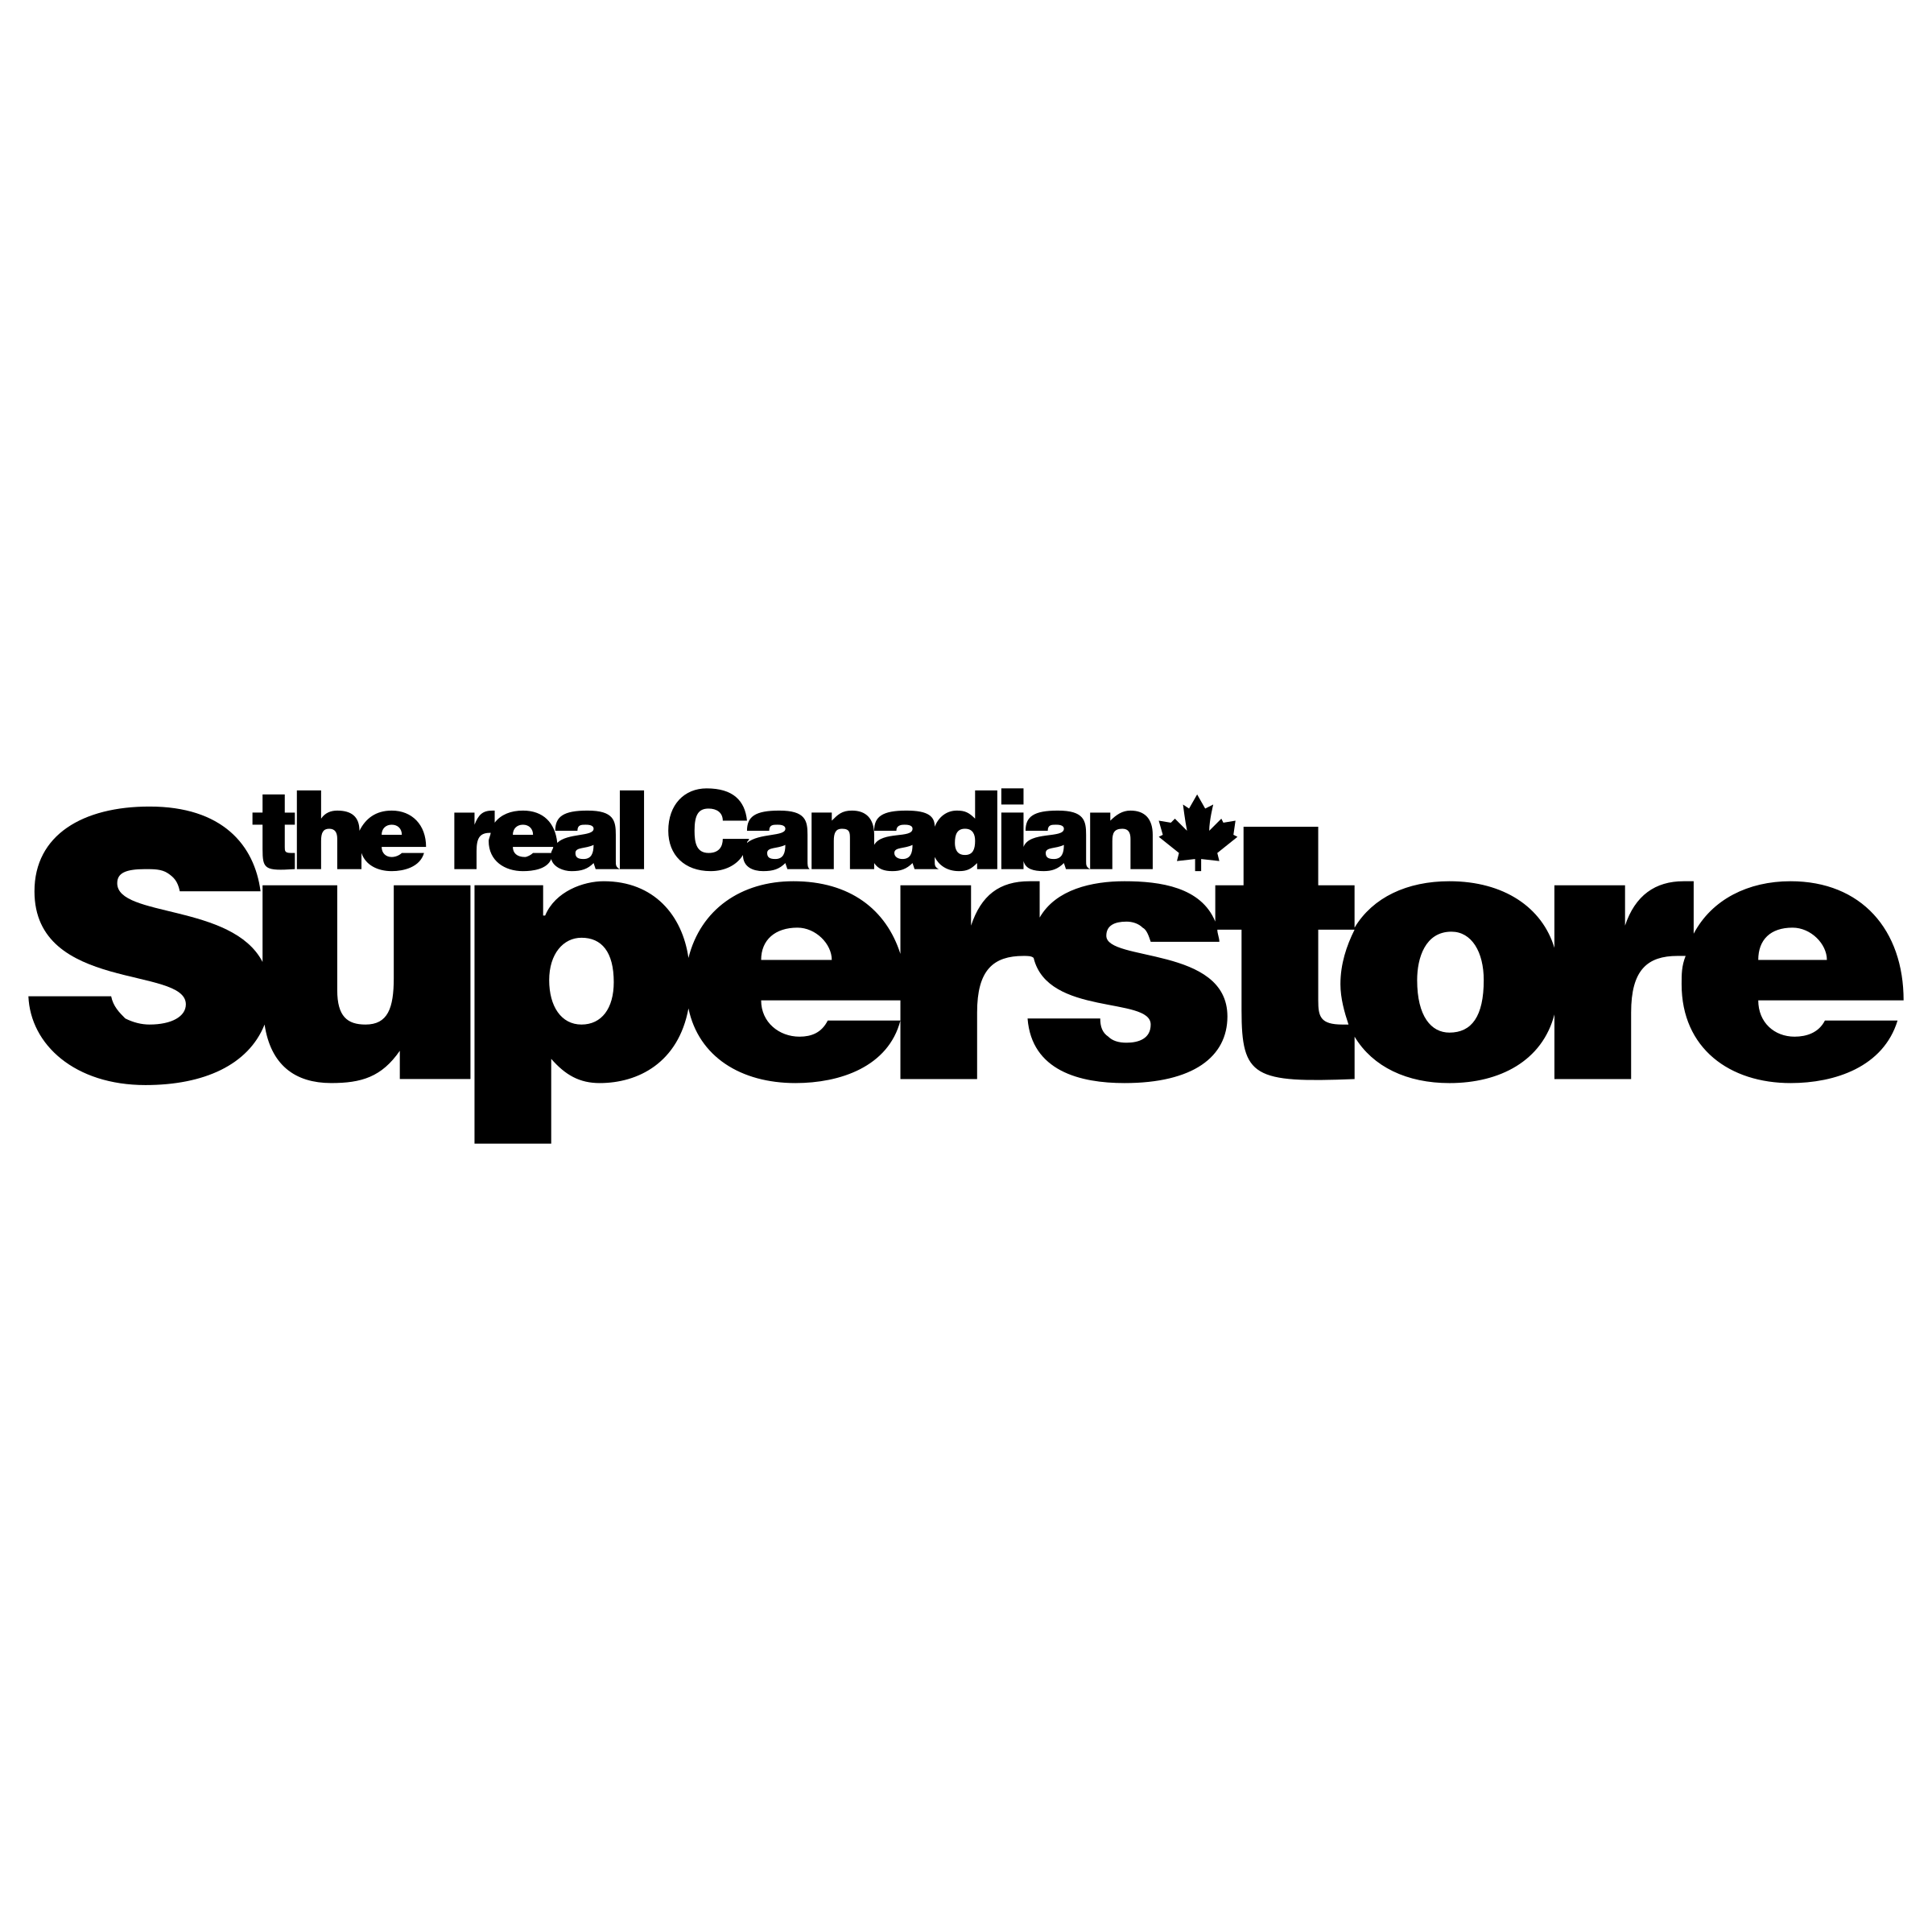 Superstore Logo - Superstore Logo PNG Transparent & SVG Vector - Freebie Supply